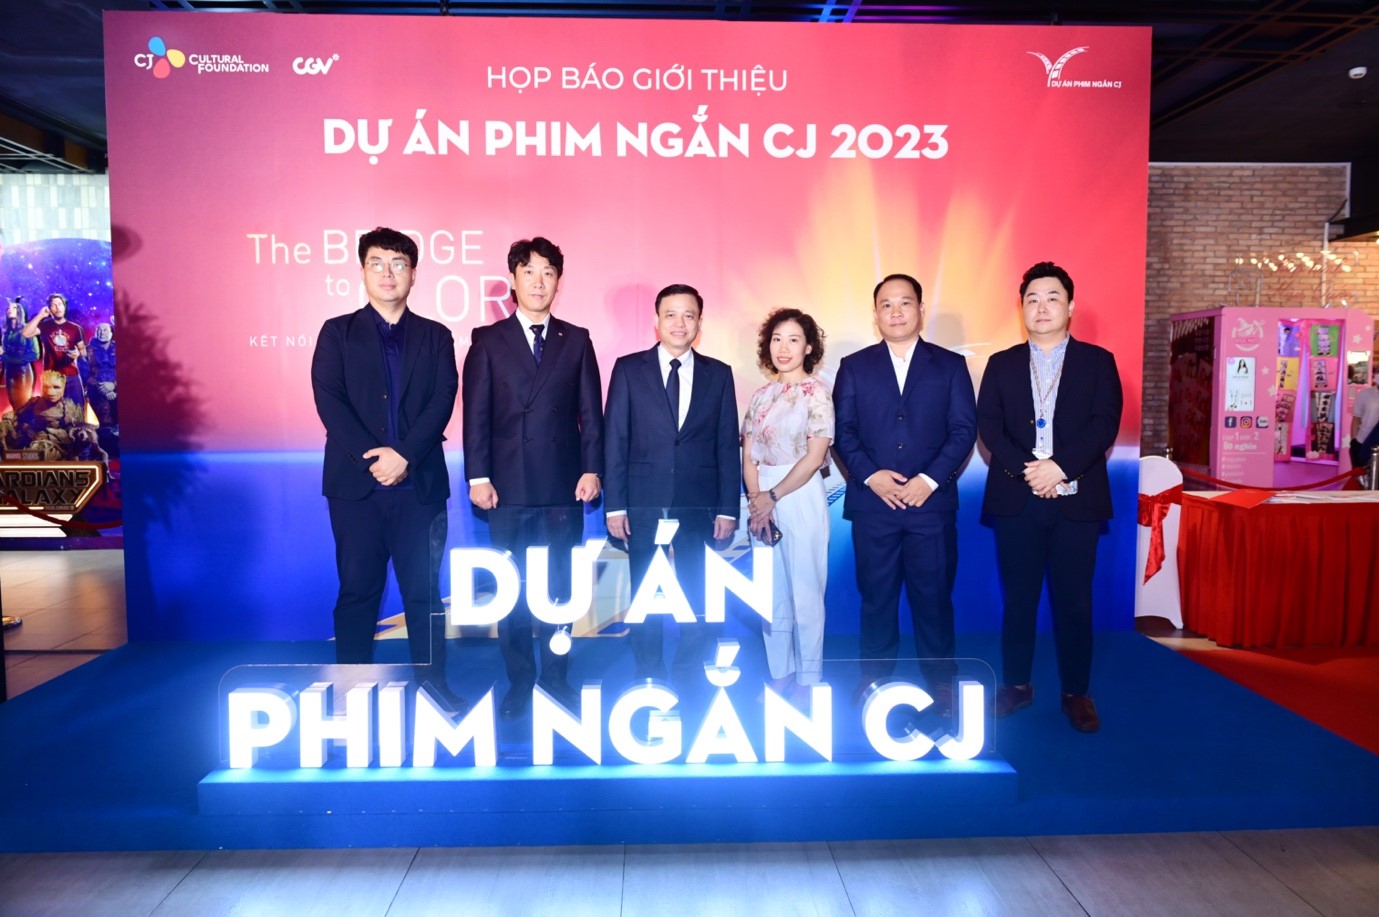 Lễ công bố dự án phim ngắn CJ mùa 4 năm 2023 tại Thành phố Hồ Chí Minh